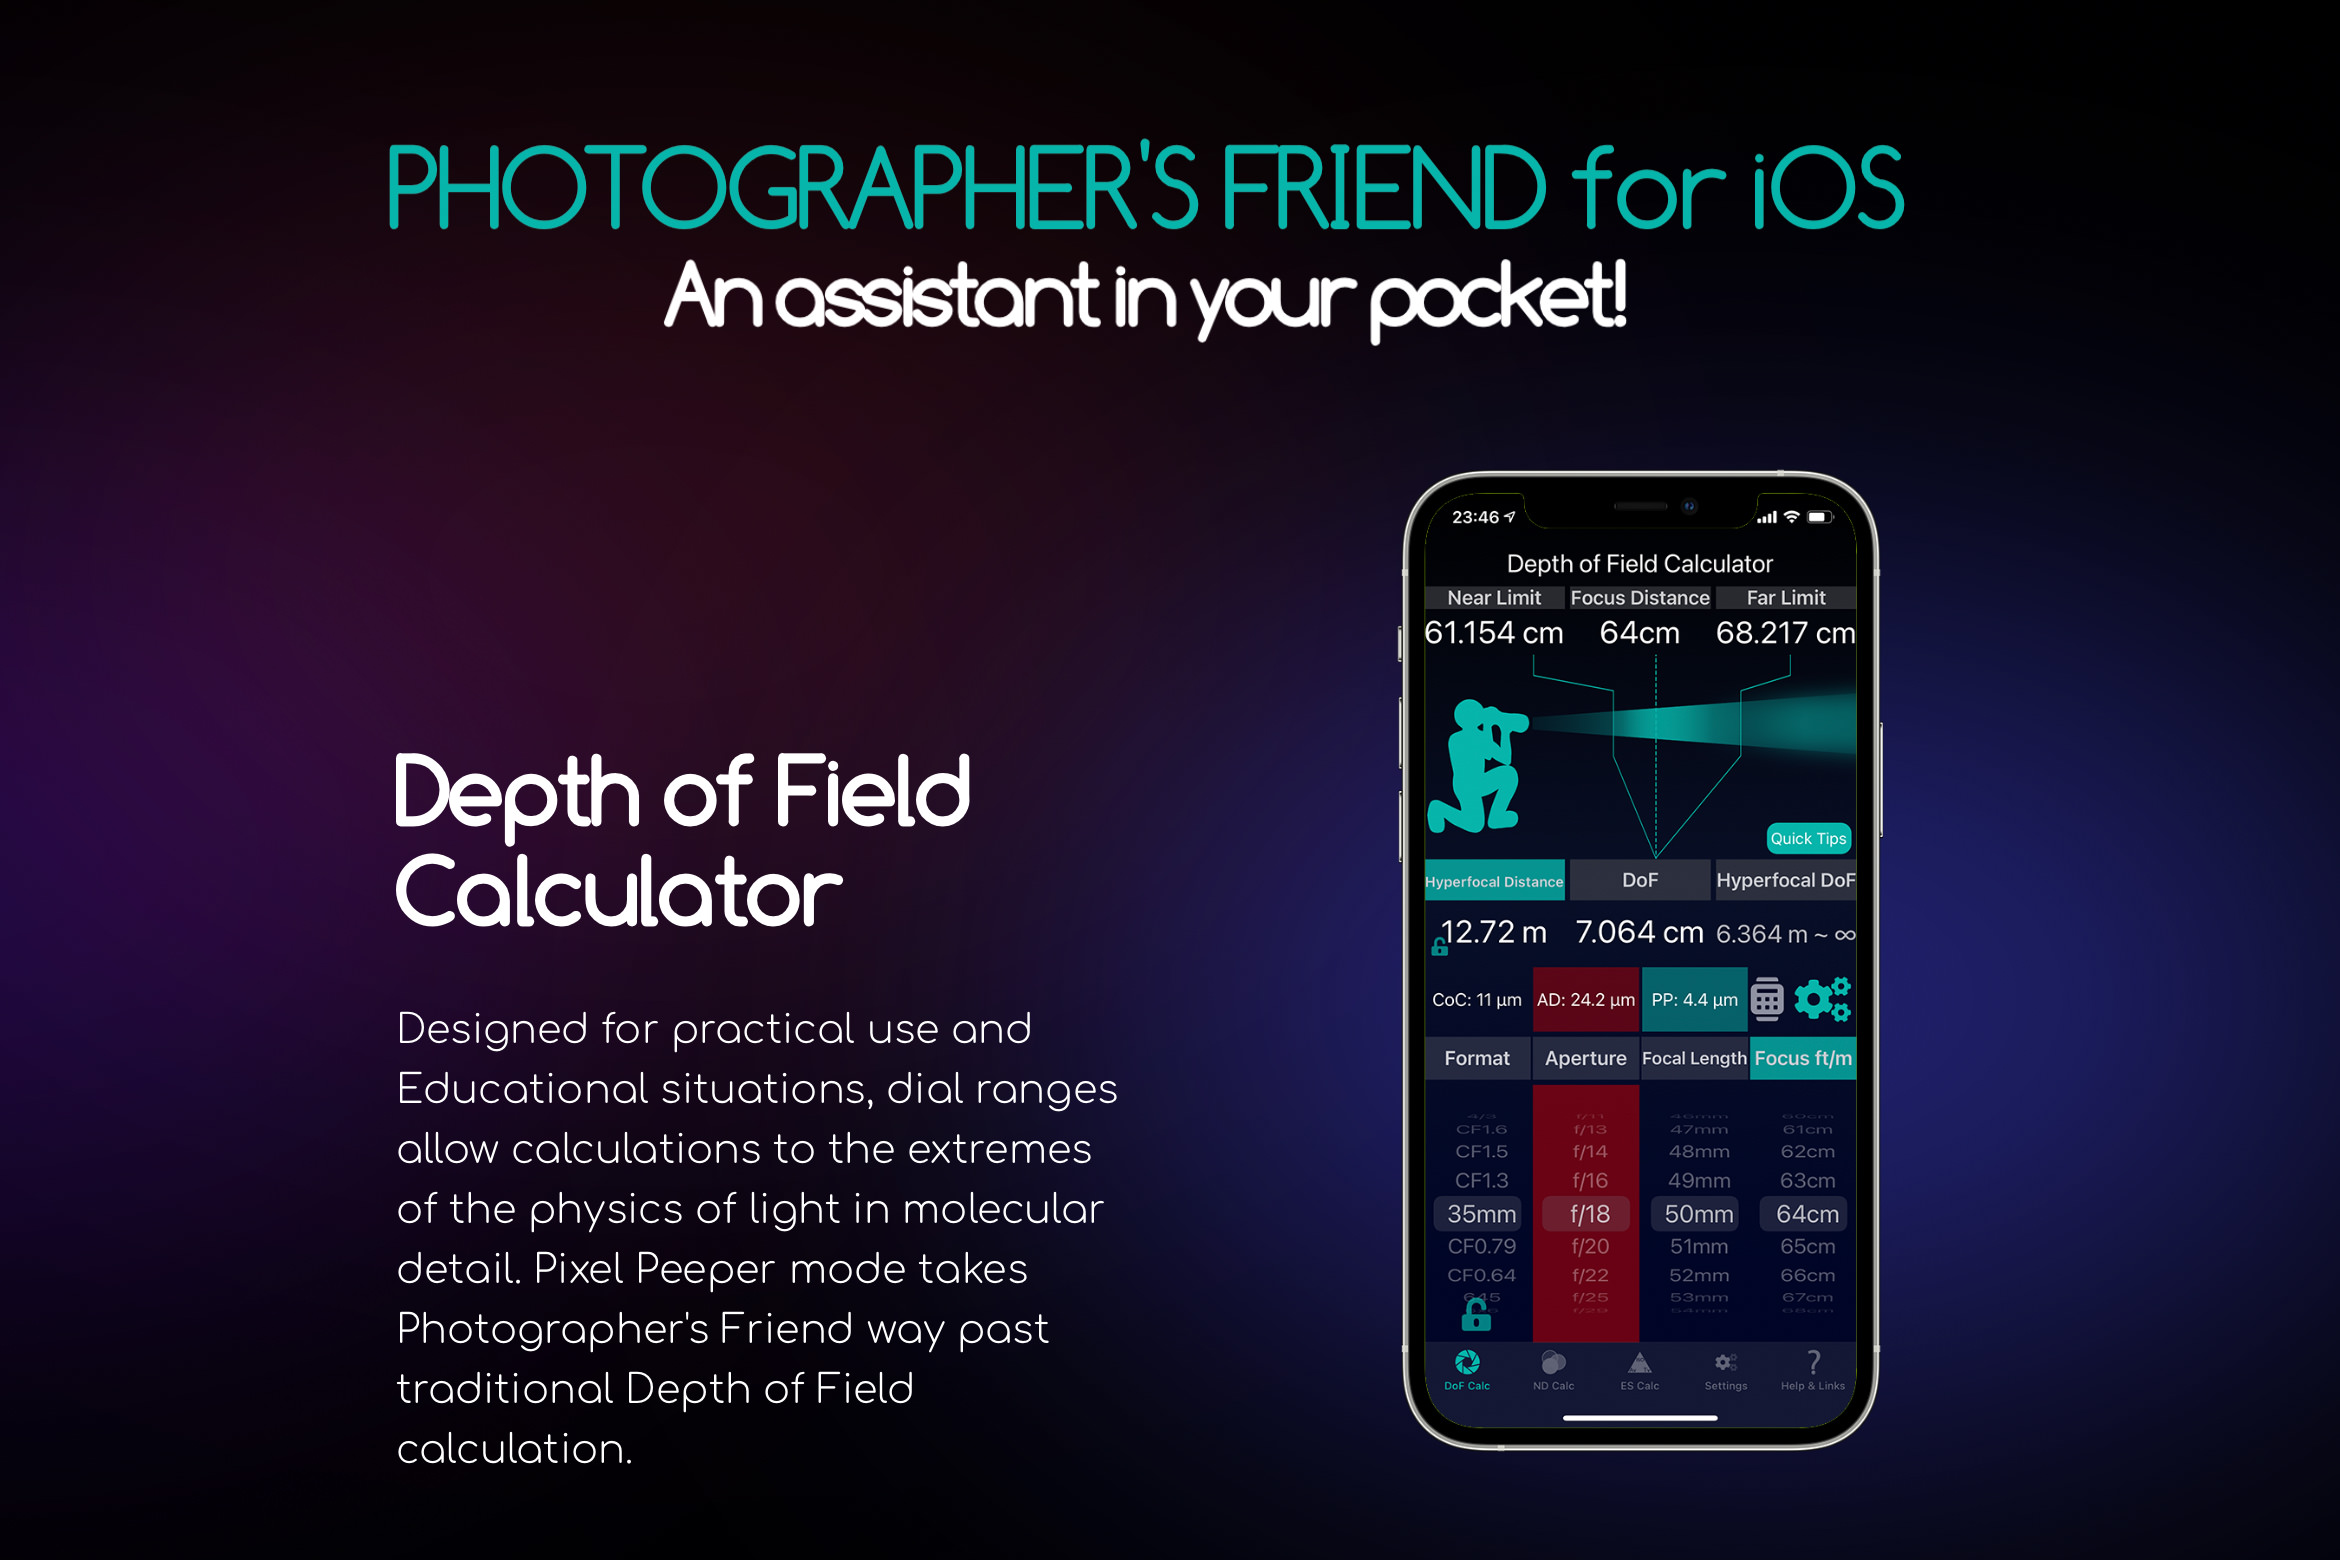 Photographer’s Friend App for iOS